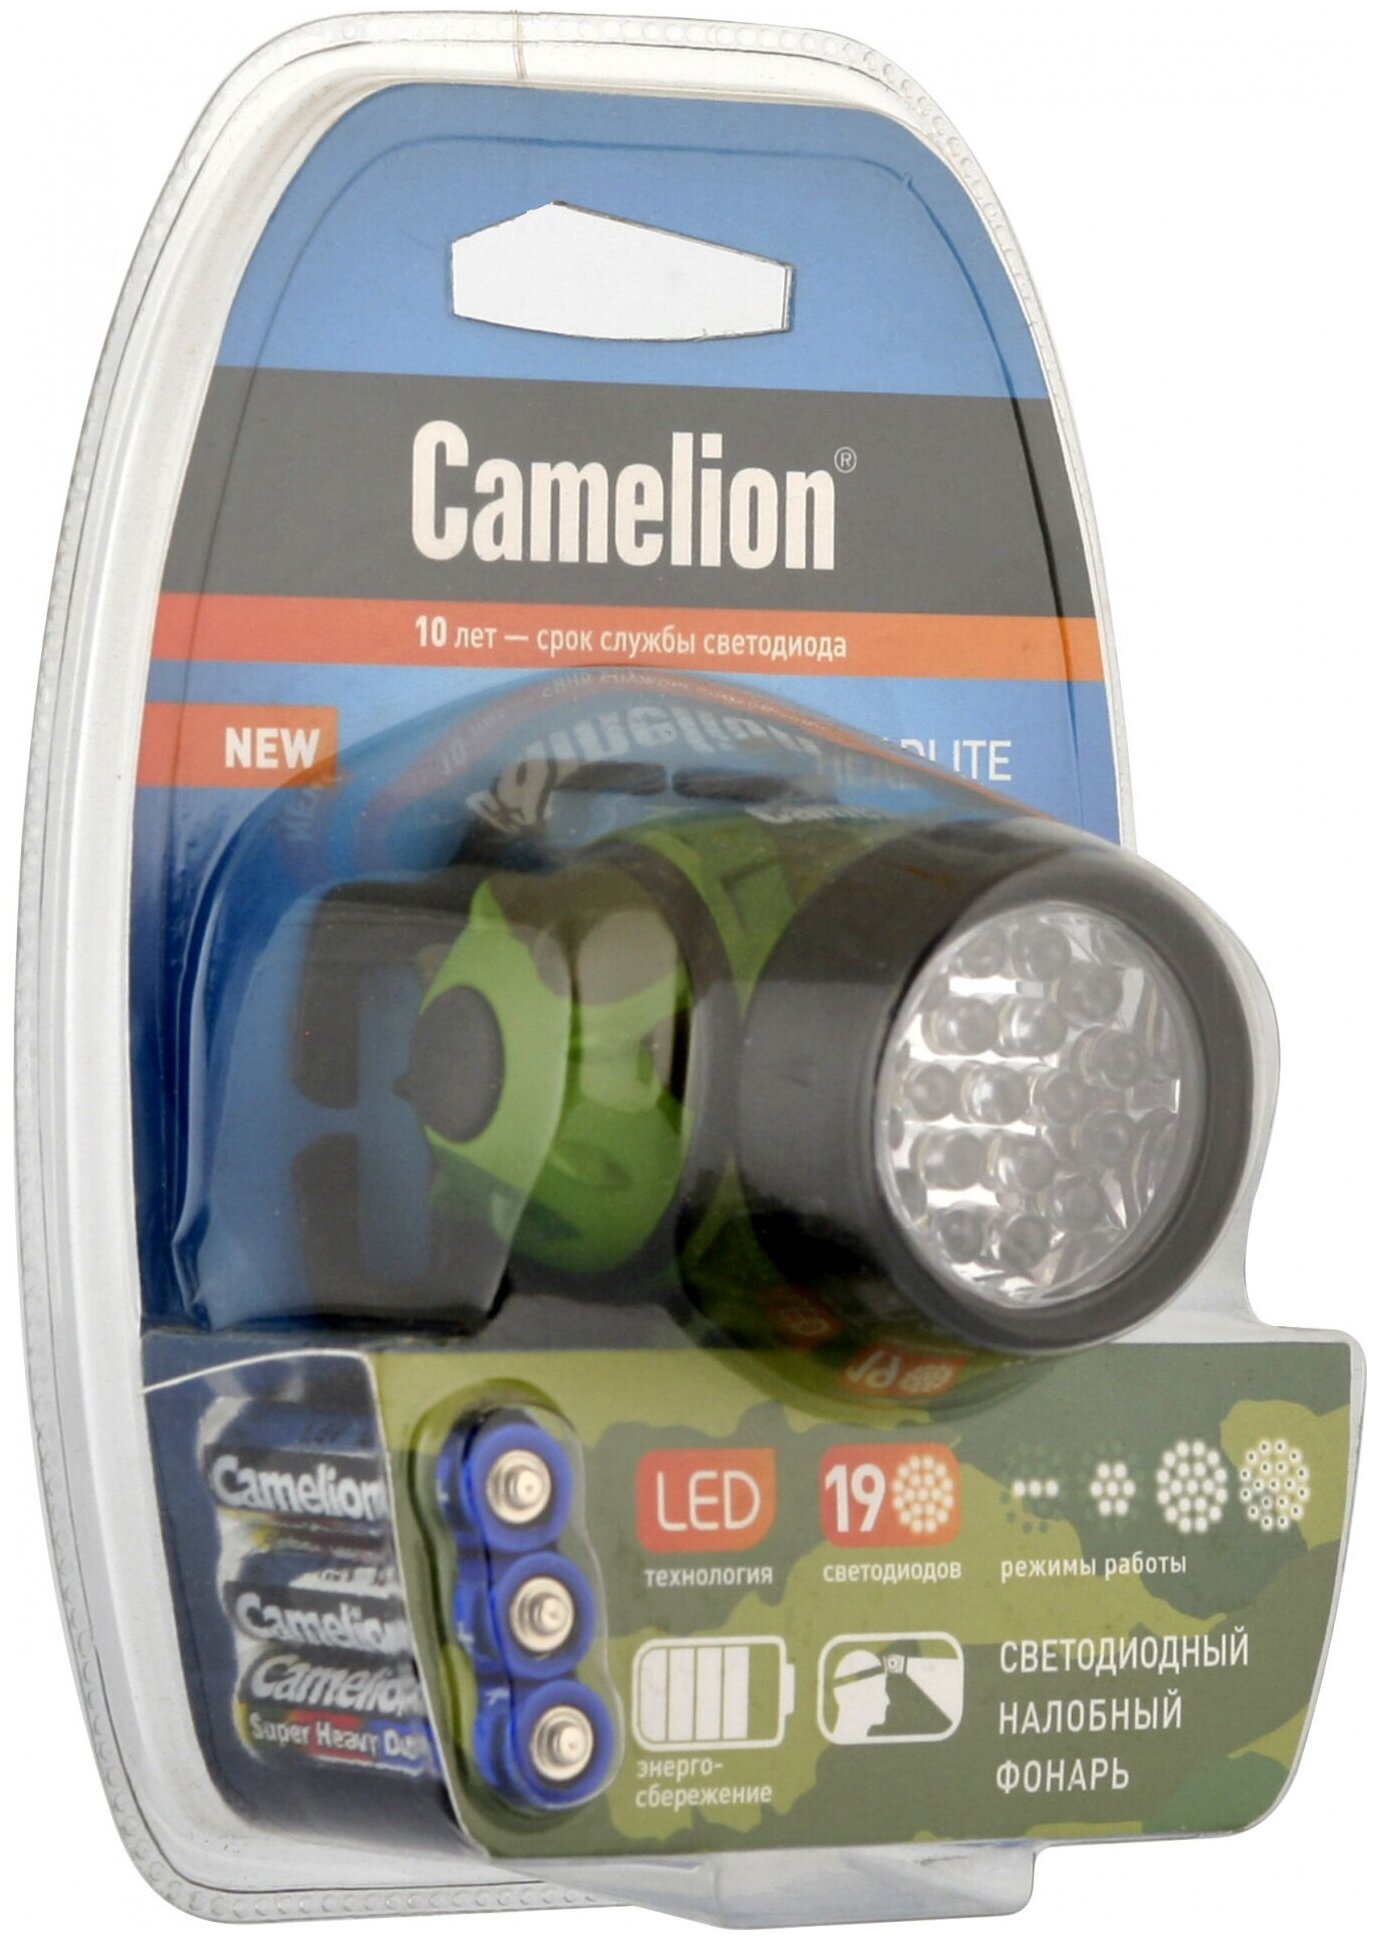 Налобный фонарь Camelion - фото №2